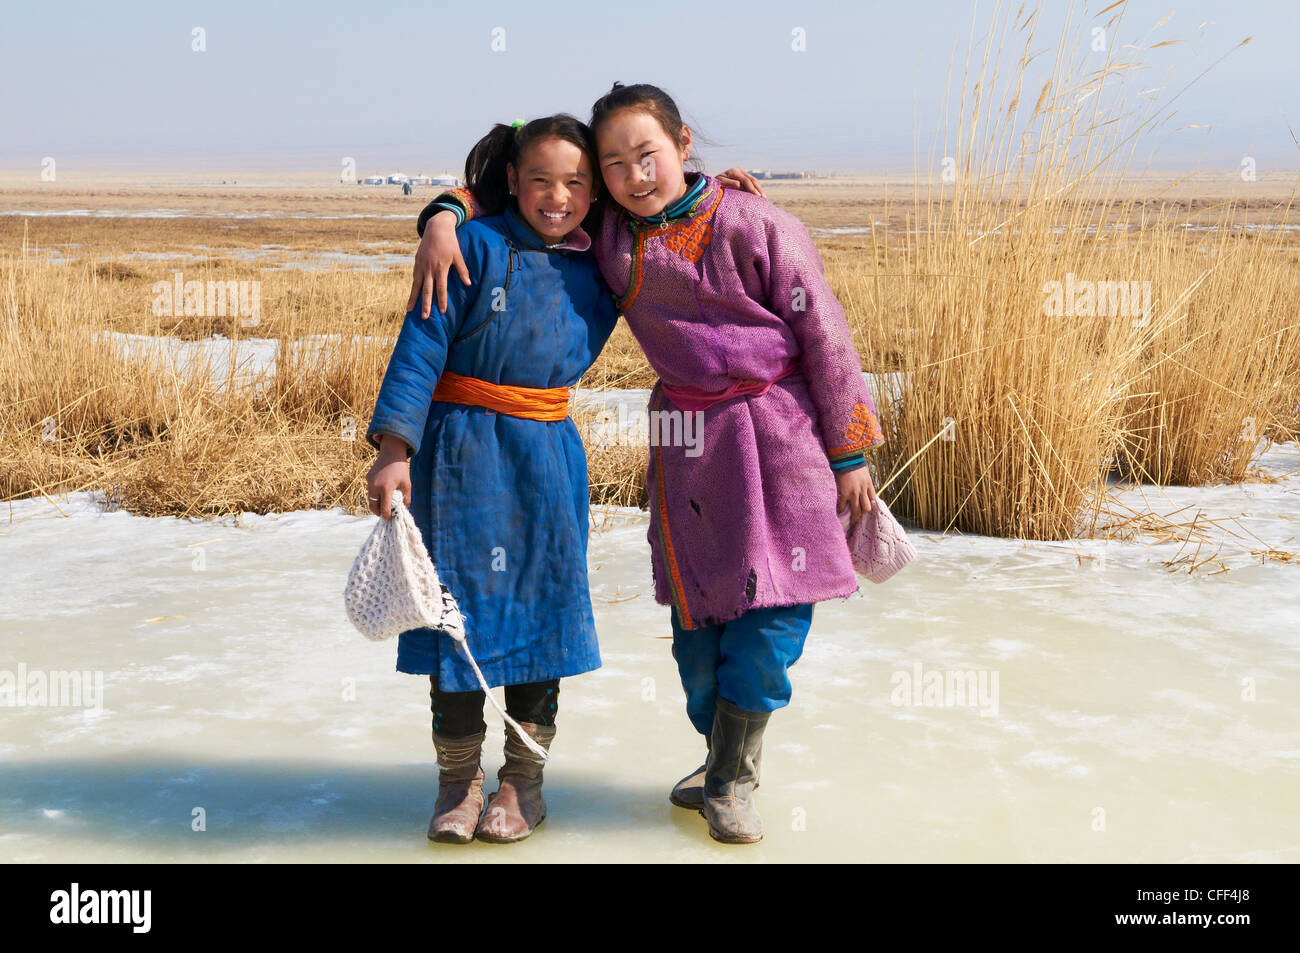 Les jeunes filles en costume traditionnel mongol (deel), province de Khovd, Mongolie, Asie centrale, Asie Banque D'Images